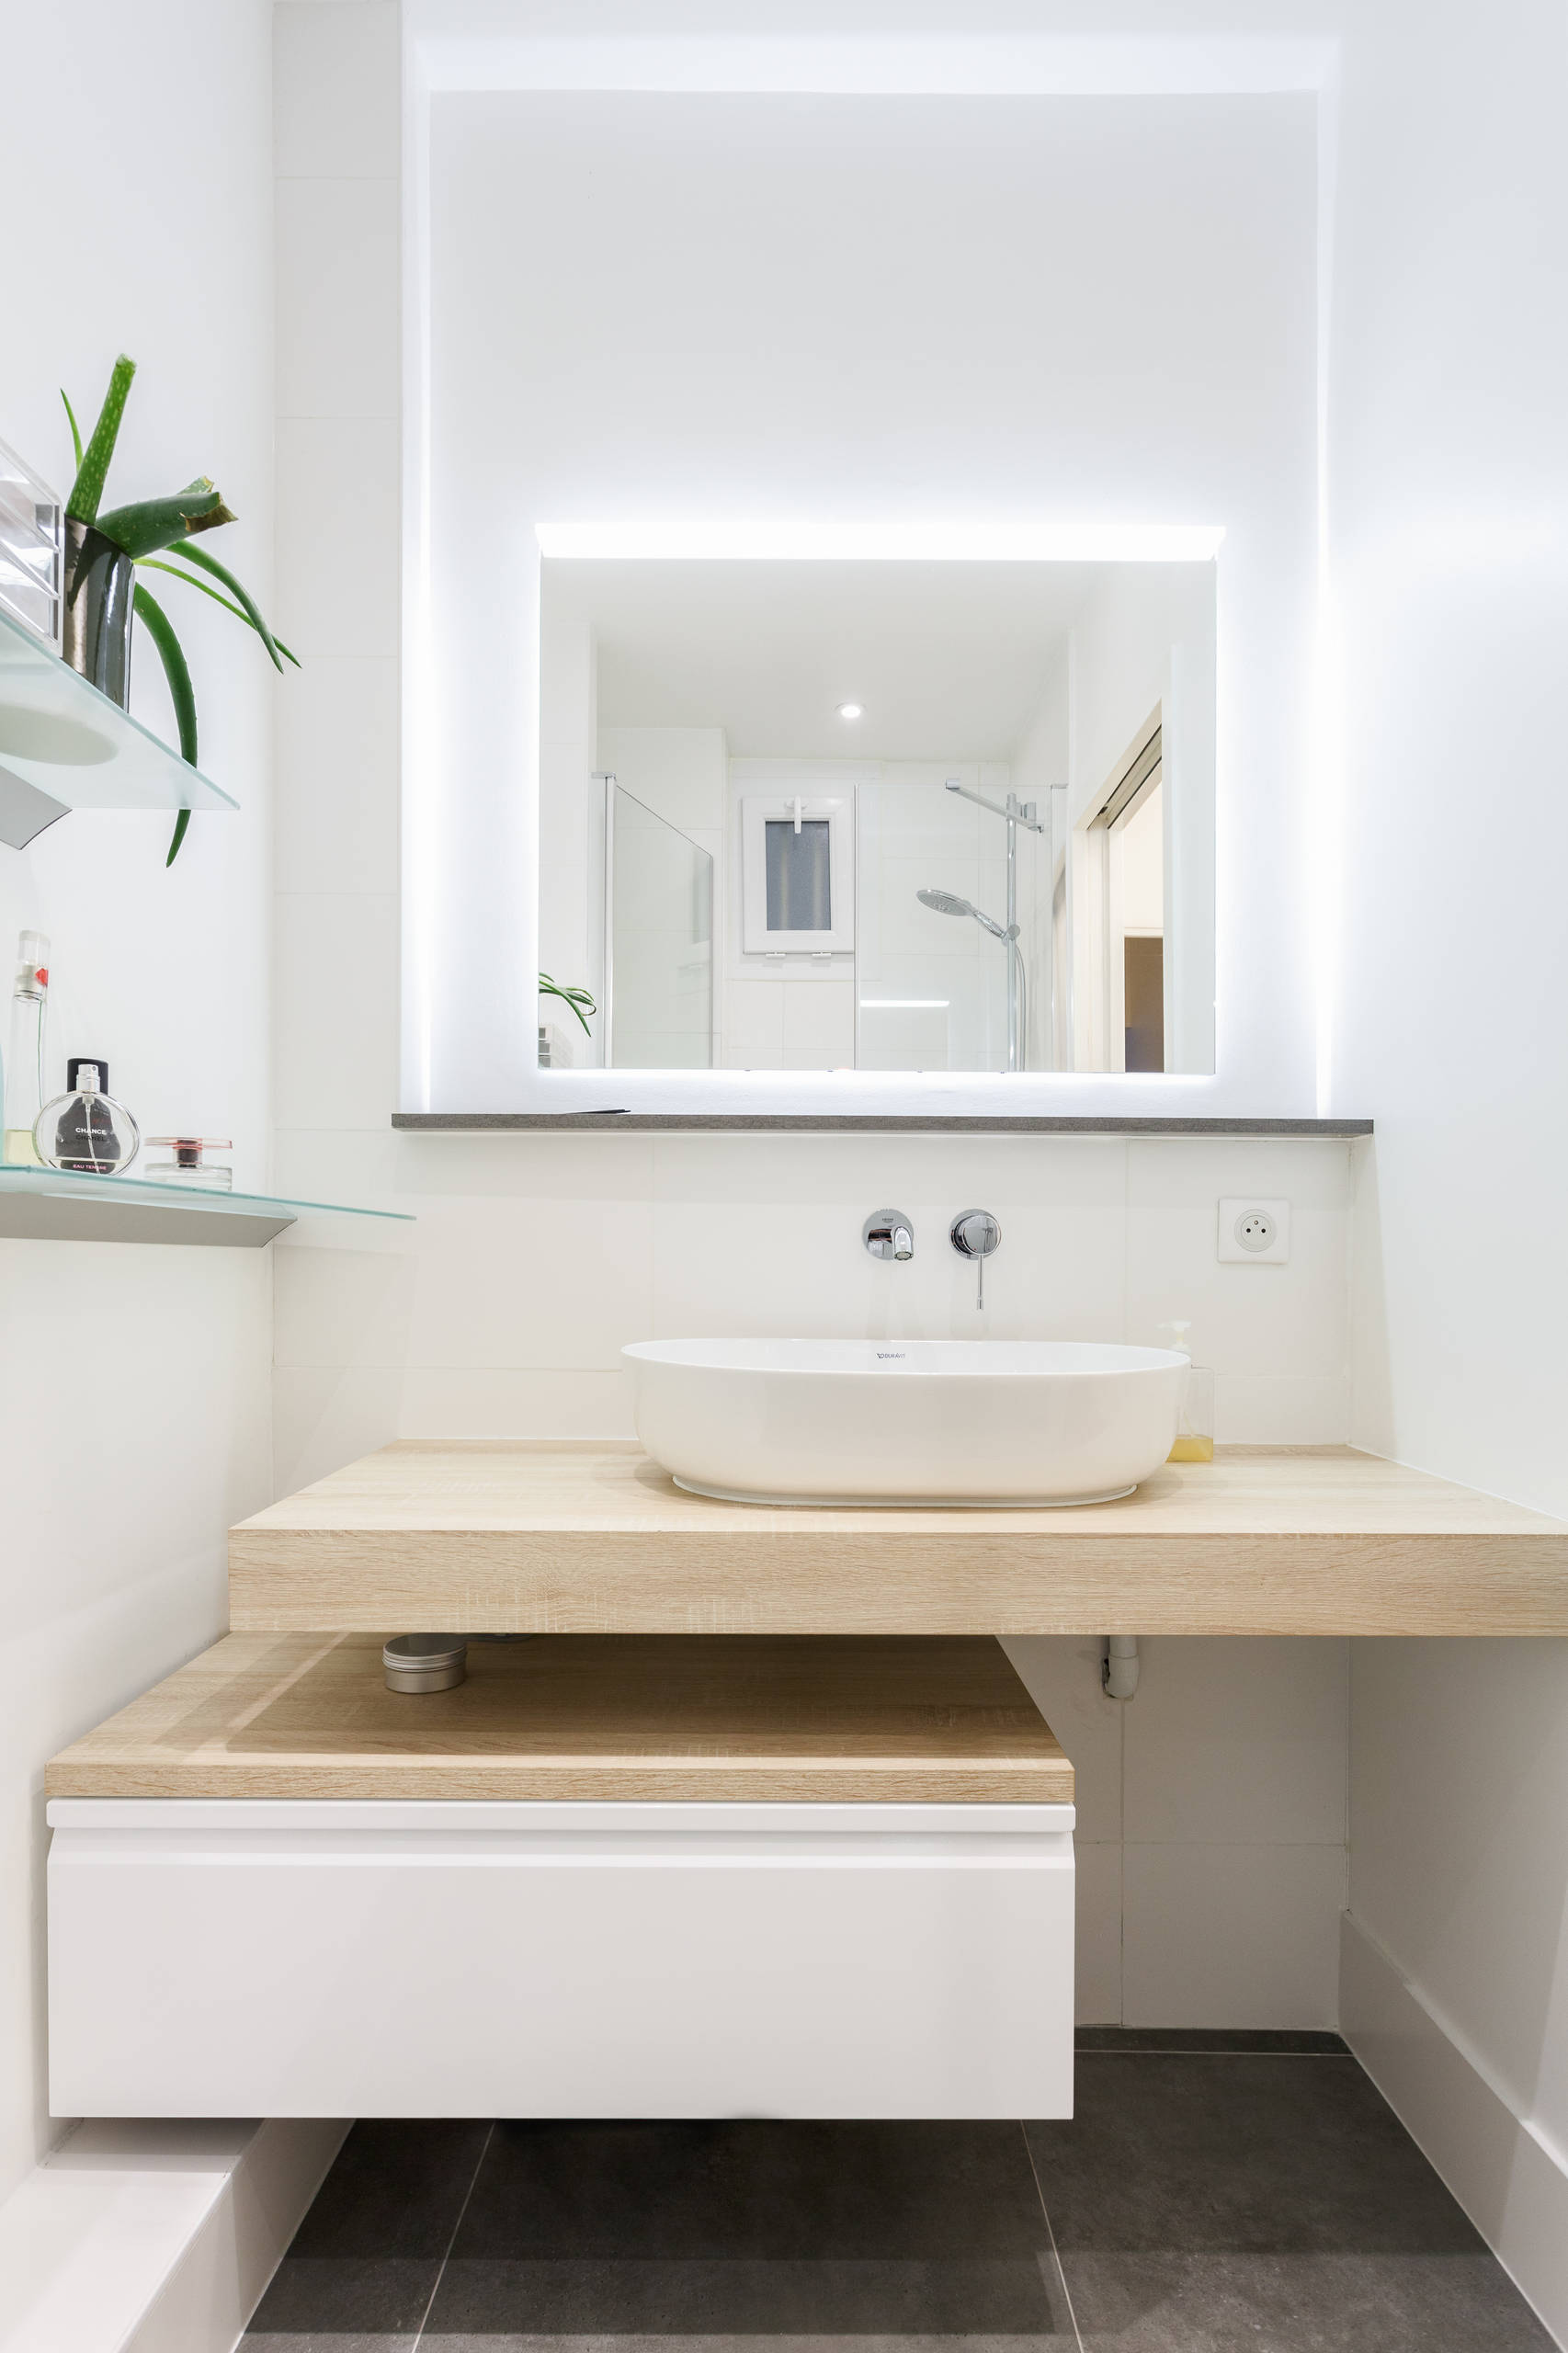 Salle de bain moderne : 30 idées inspirantes pour votre déco